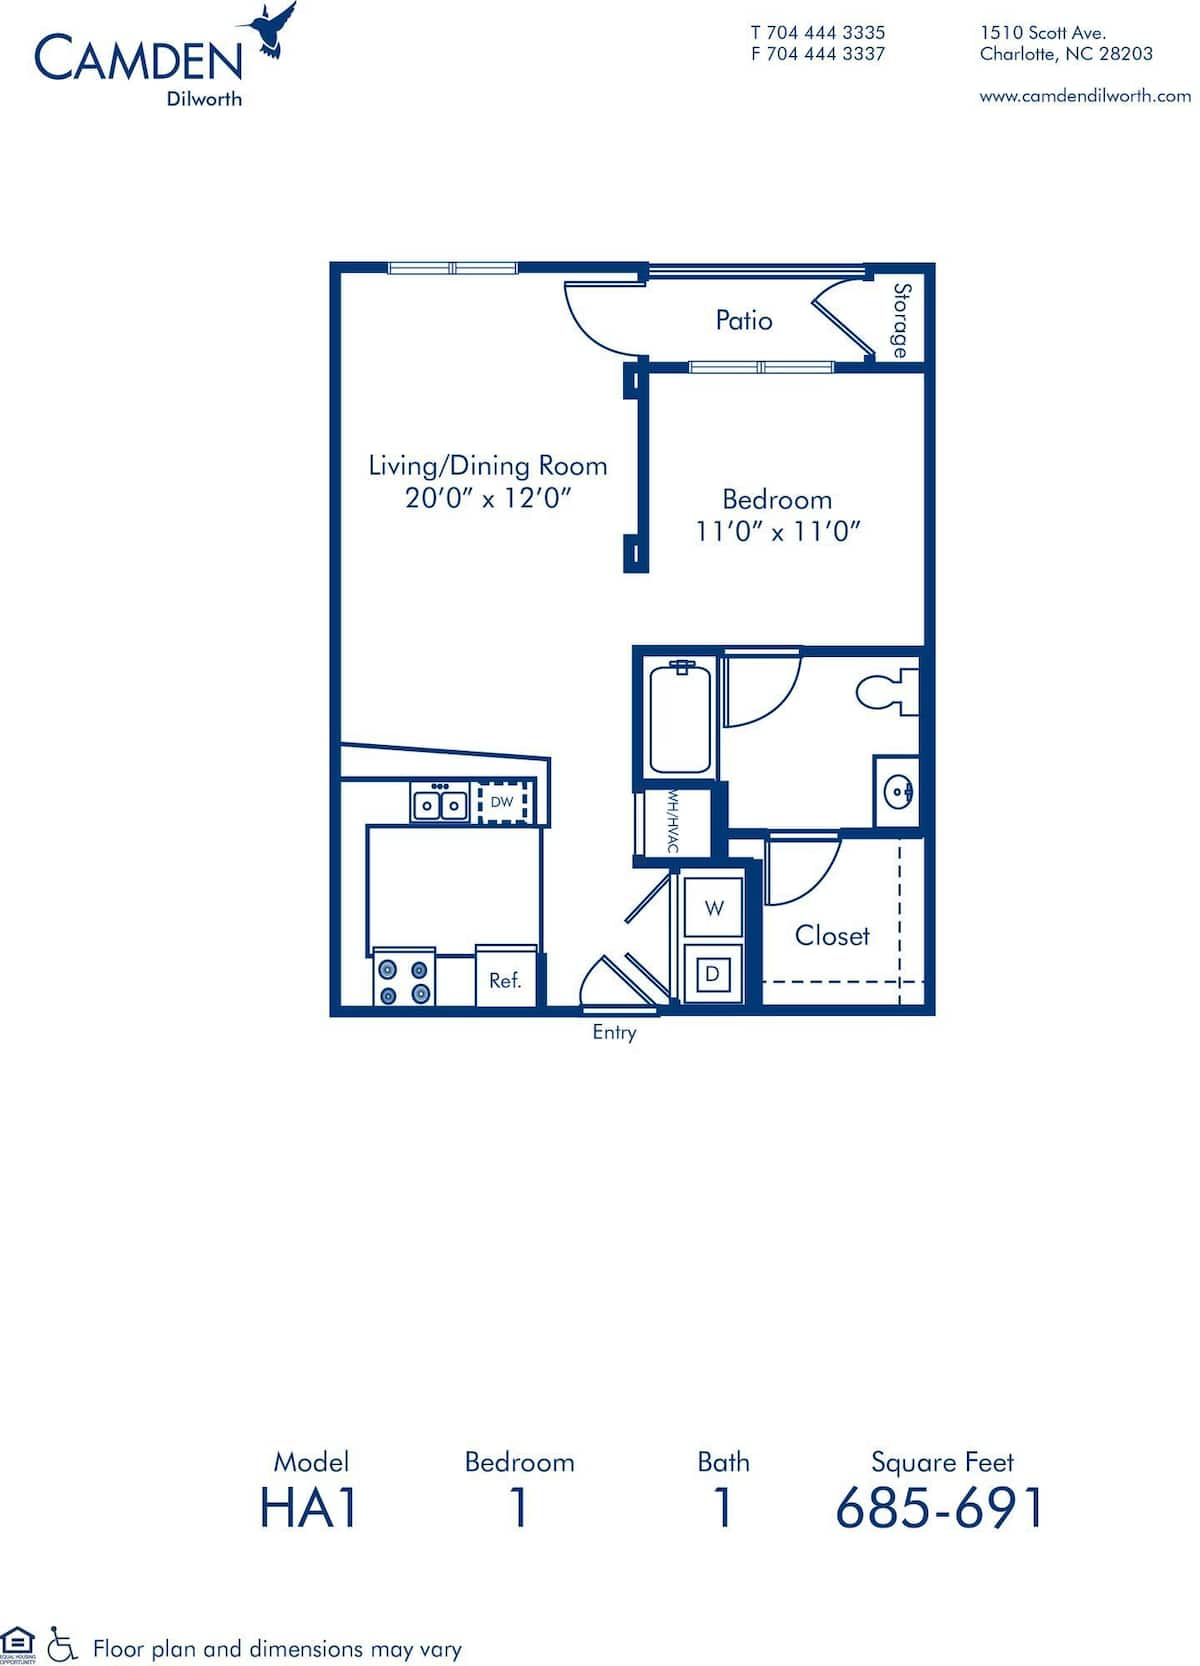 Floorplan diagram for HA1, showing 1 bedroom